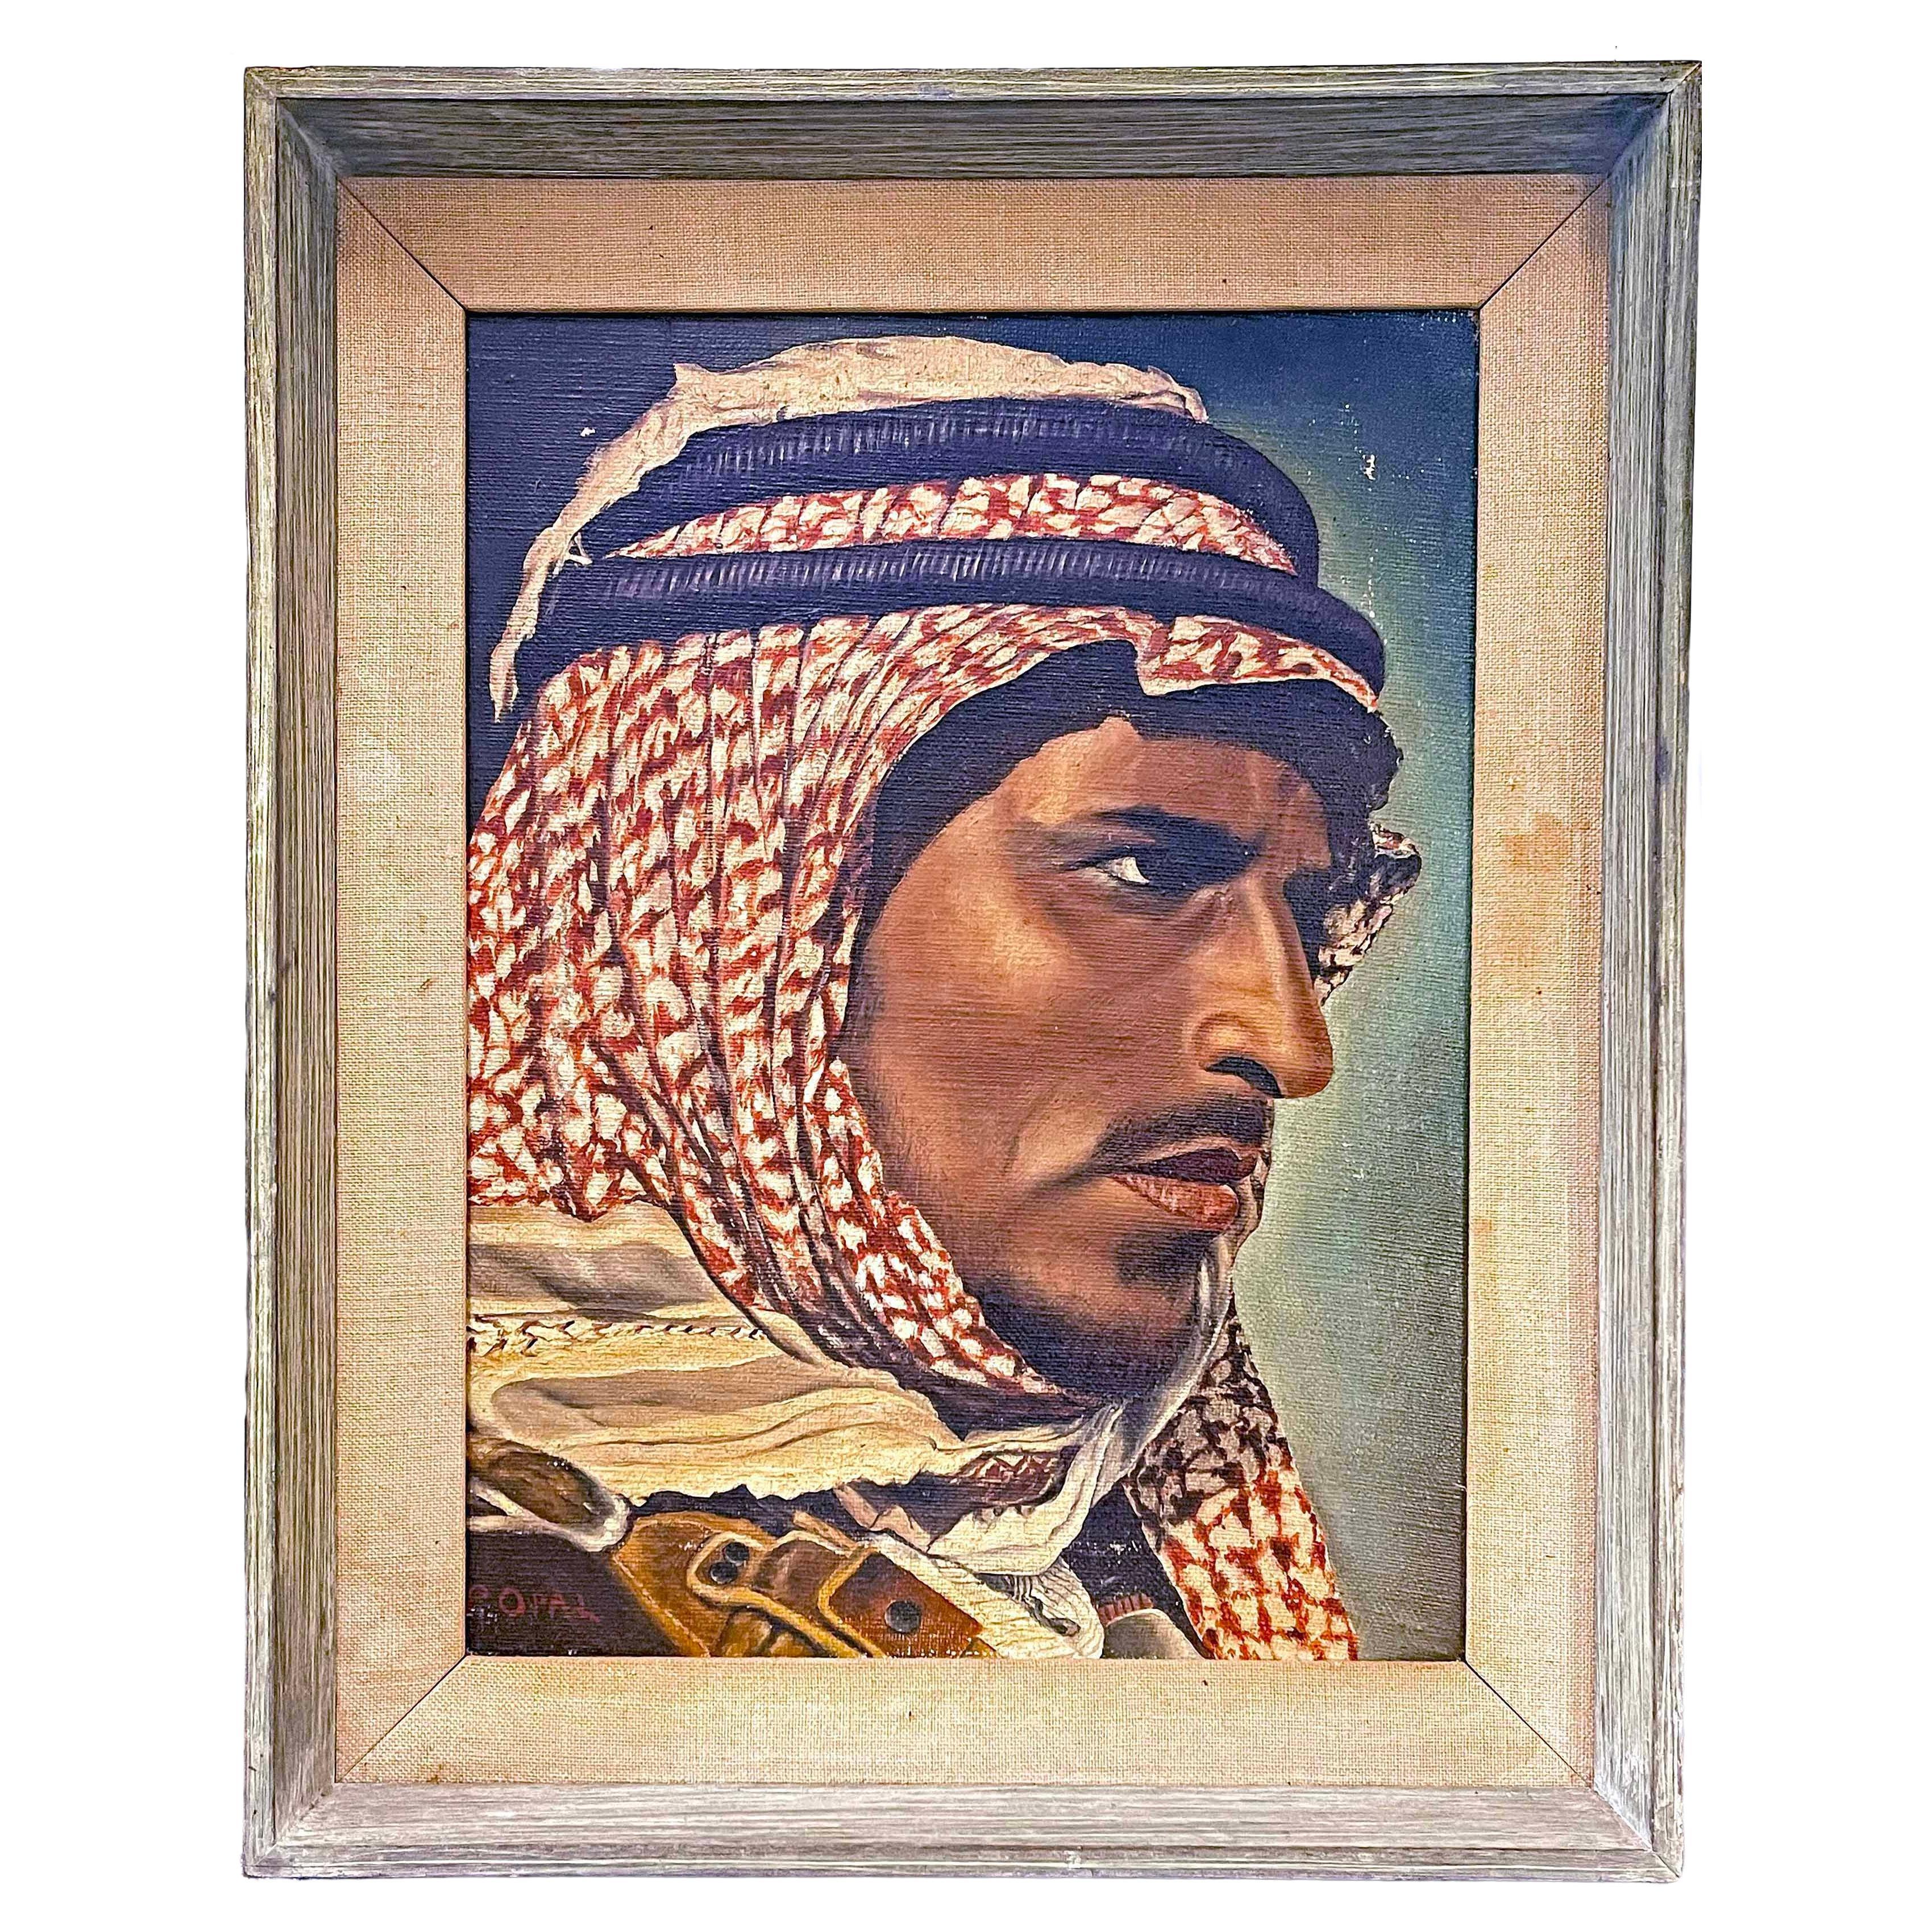 „Bedouin mit Keffiyeh“, schönes Porträt einer arabischen männlichen Figur, 1937